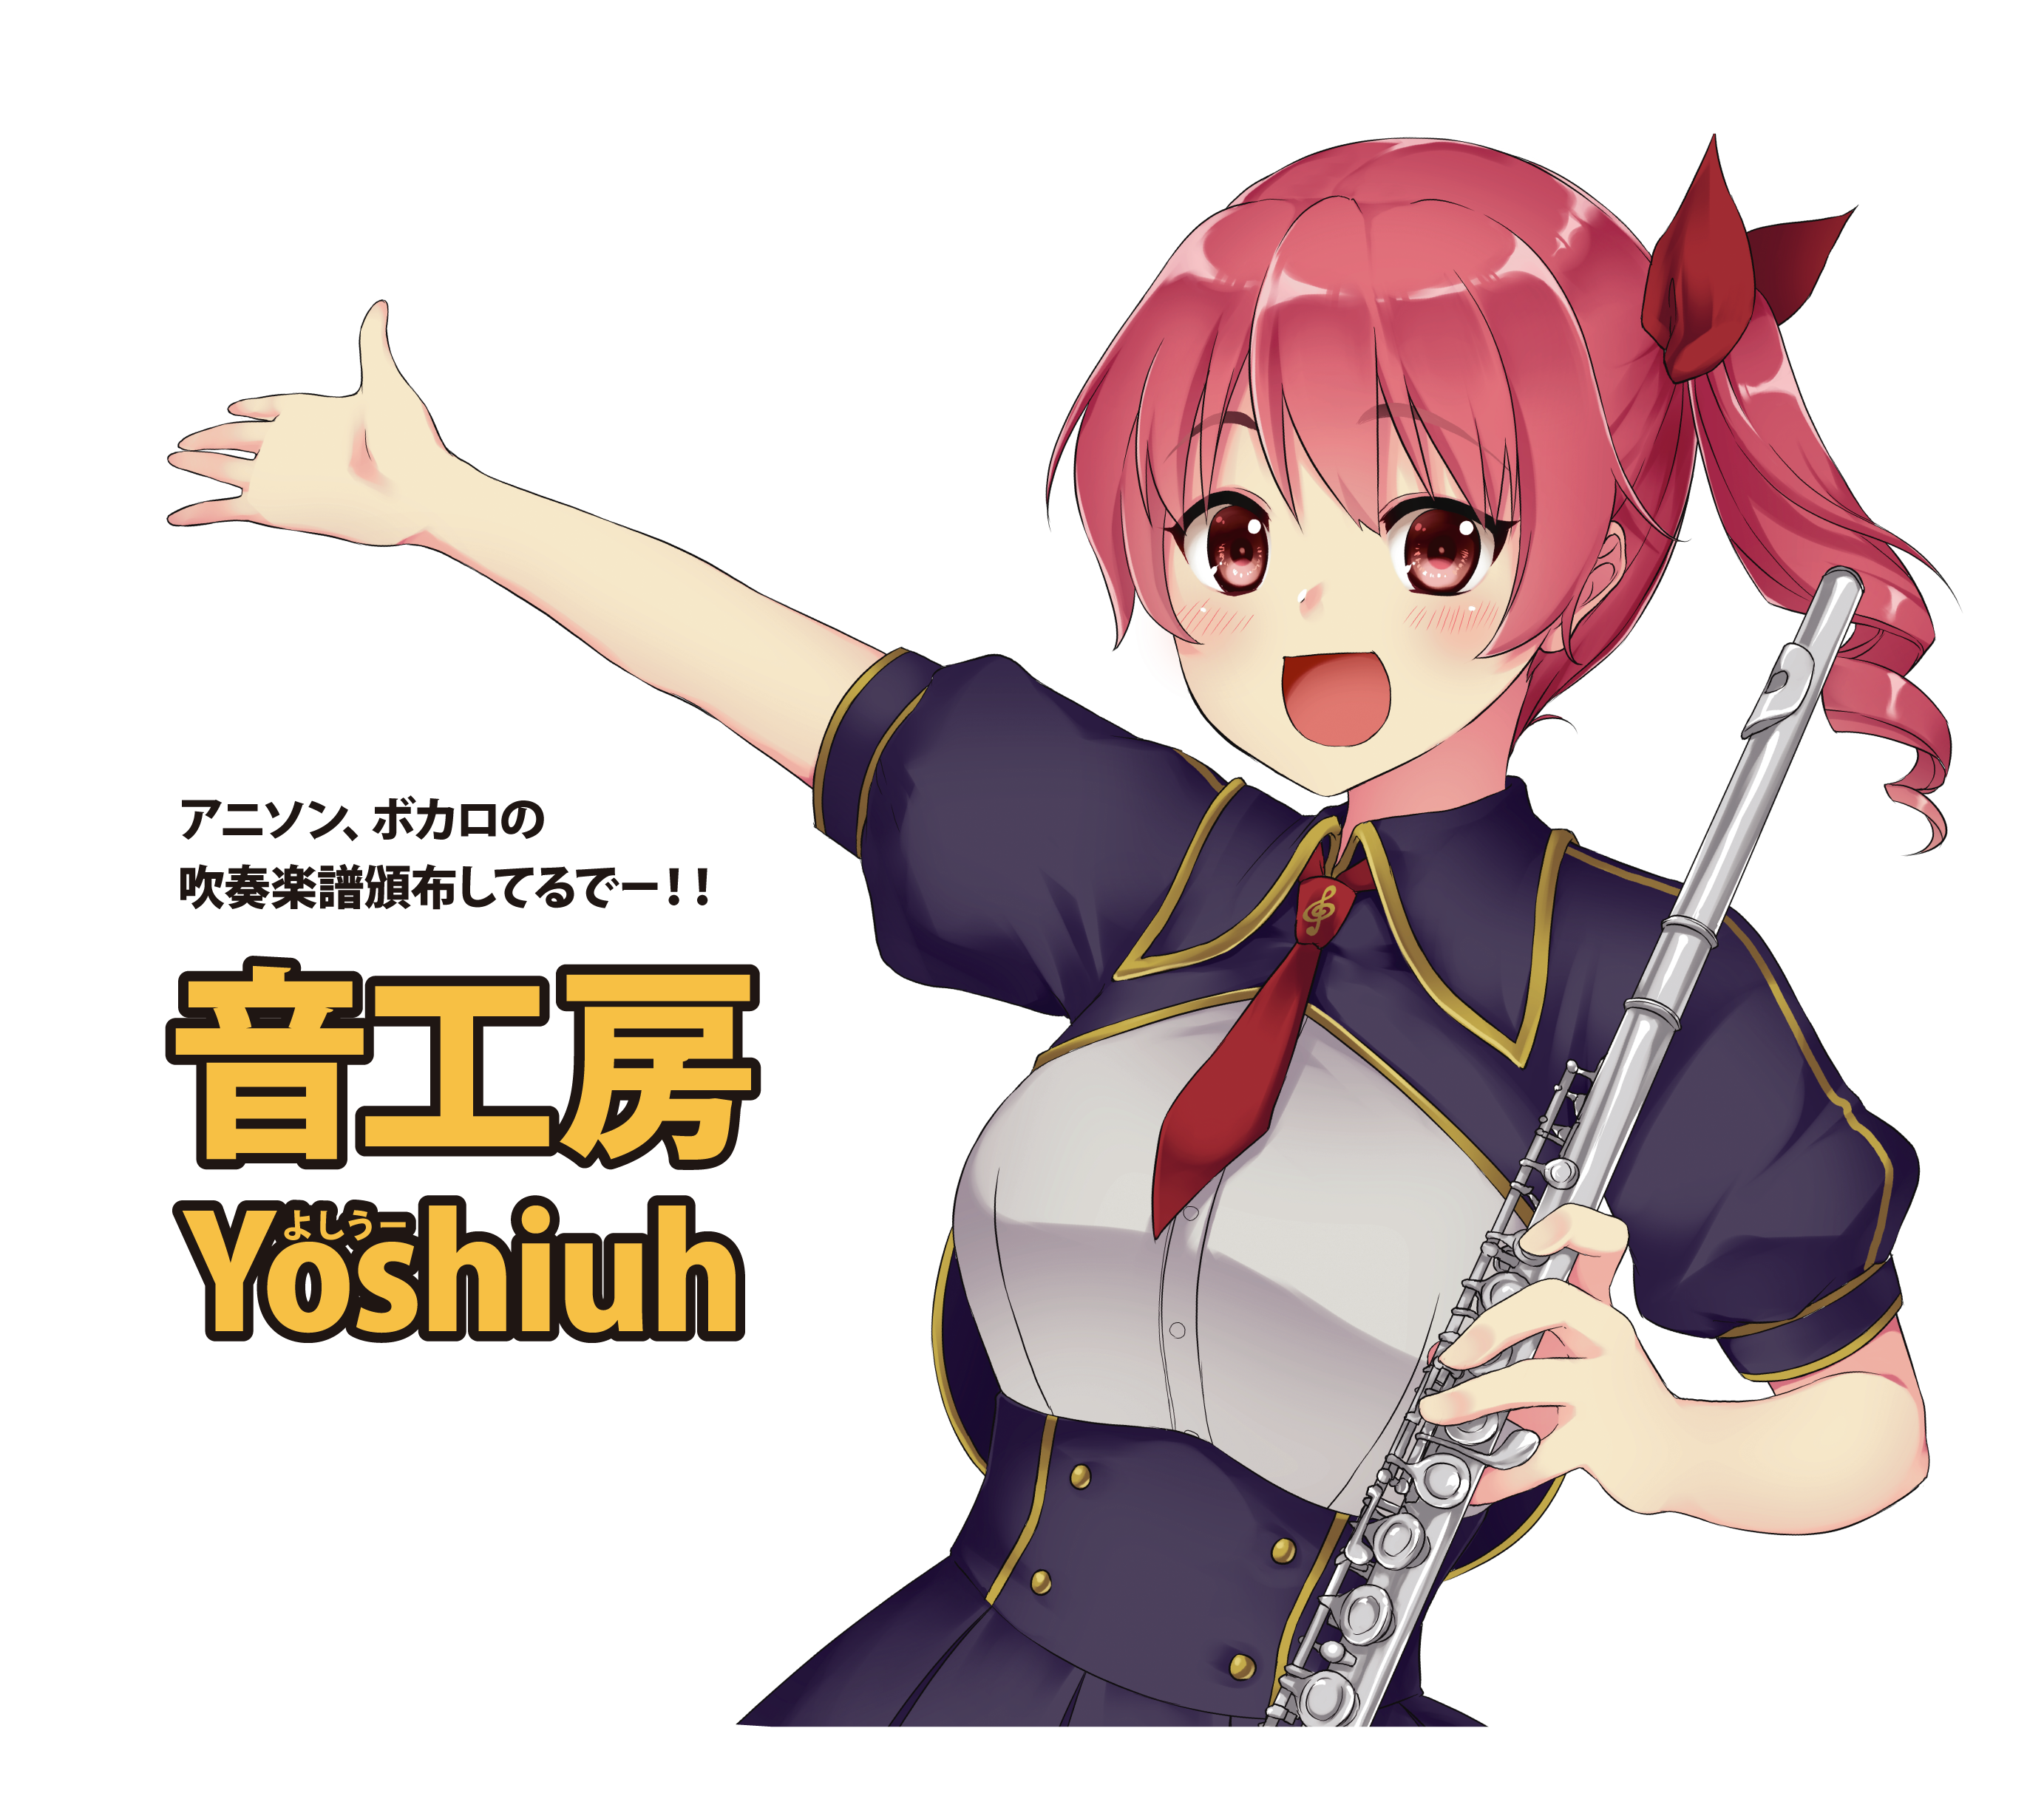 音工房Yoshiuh